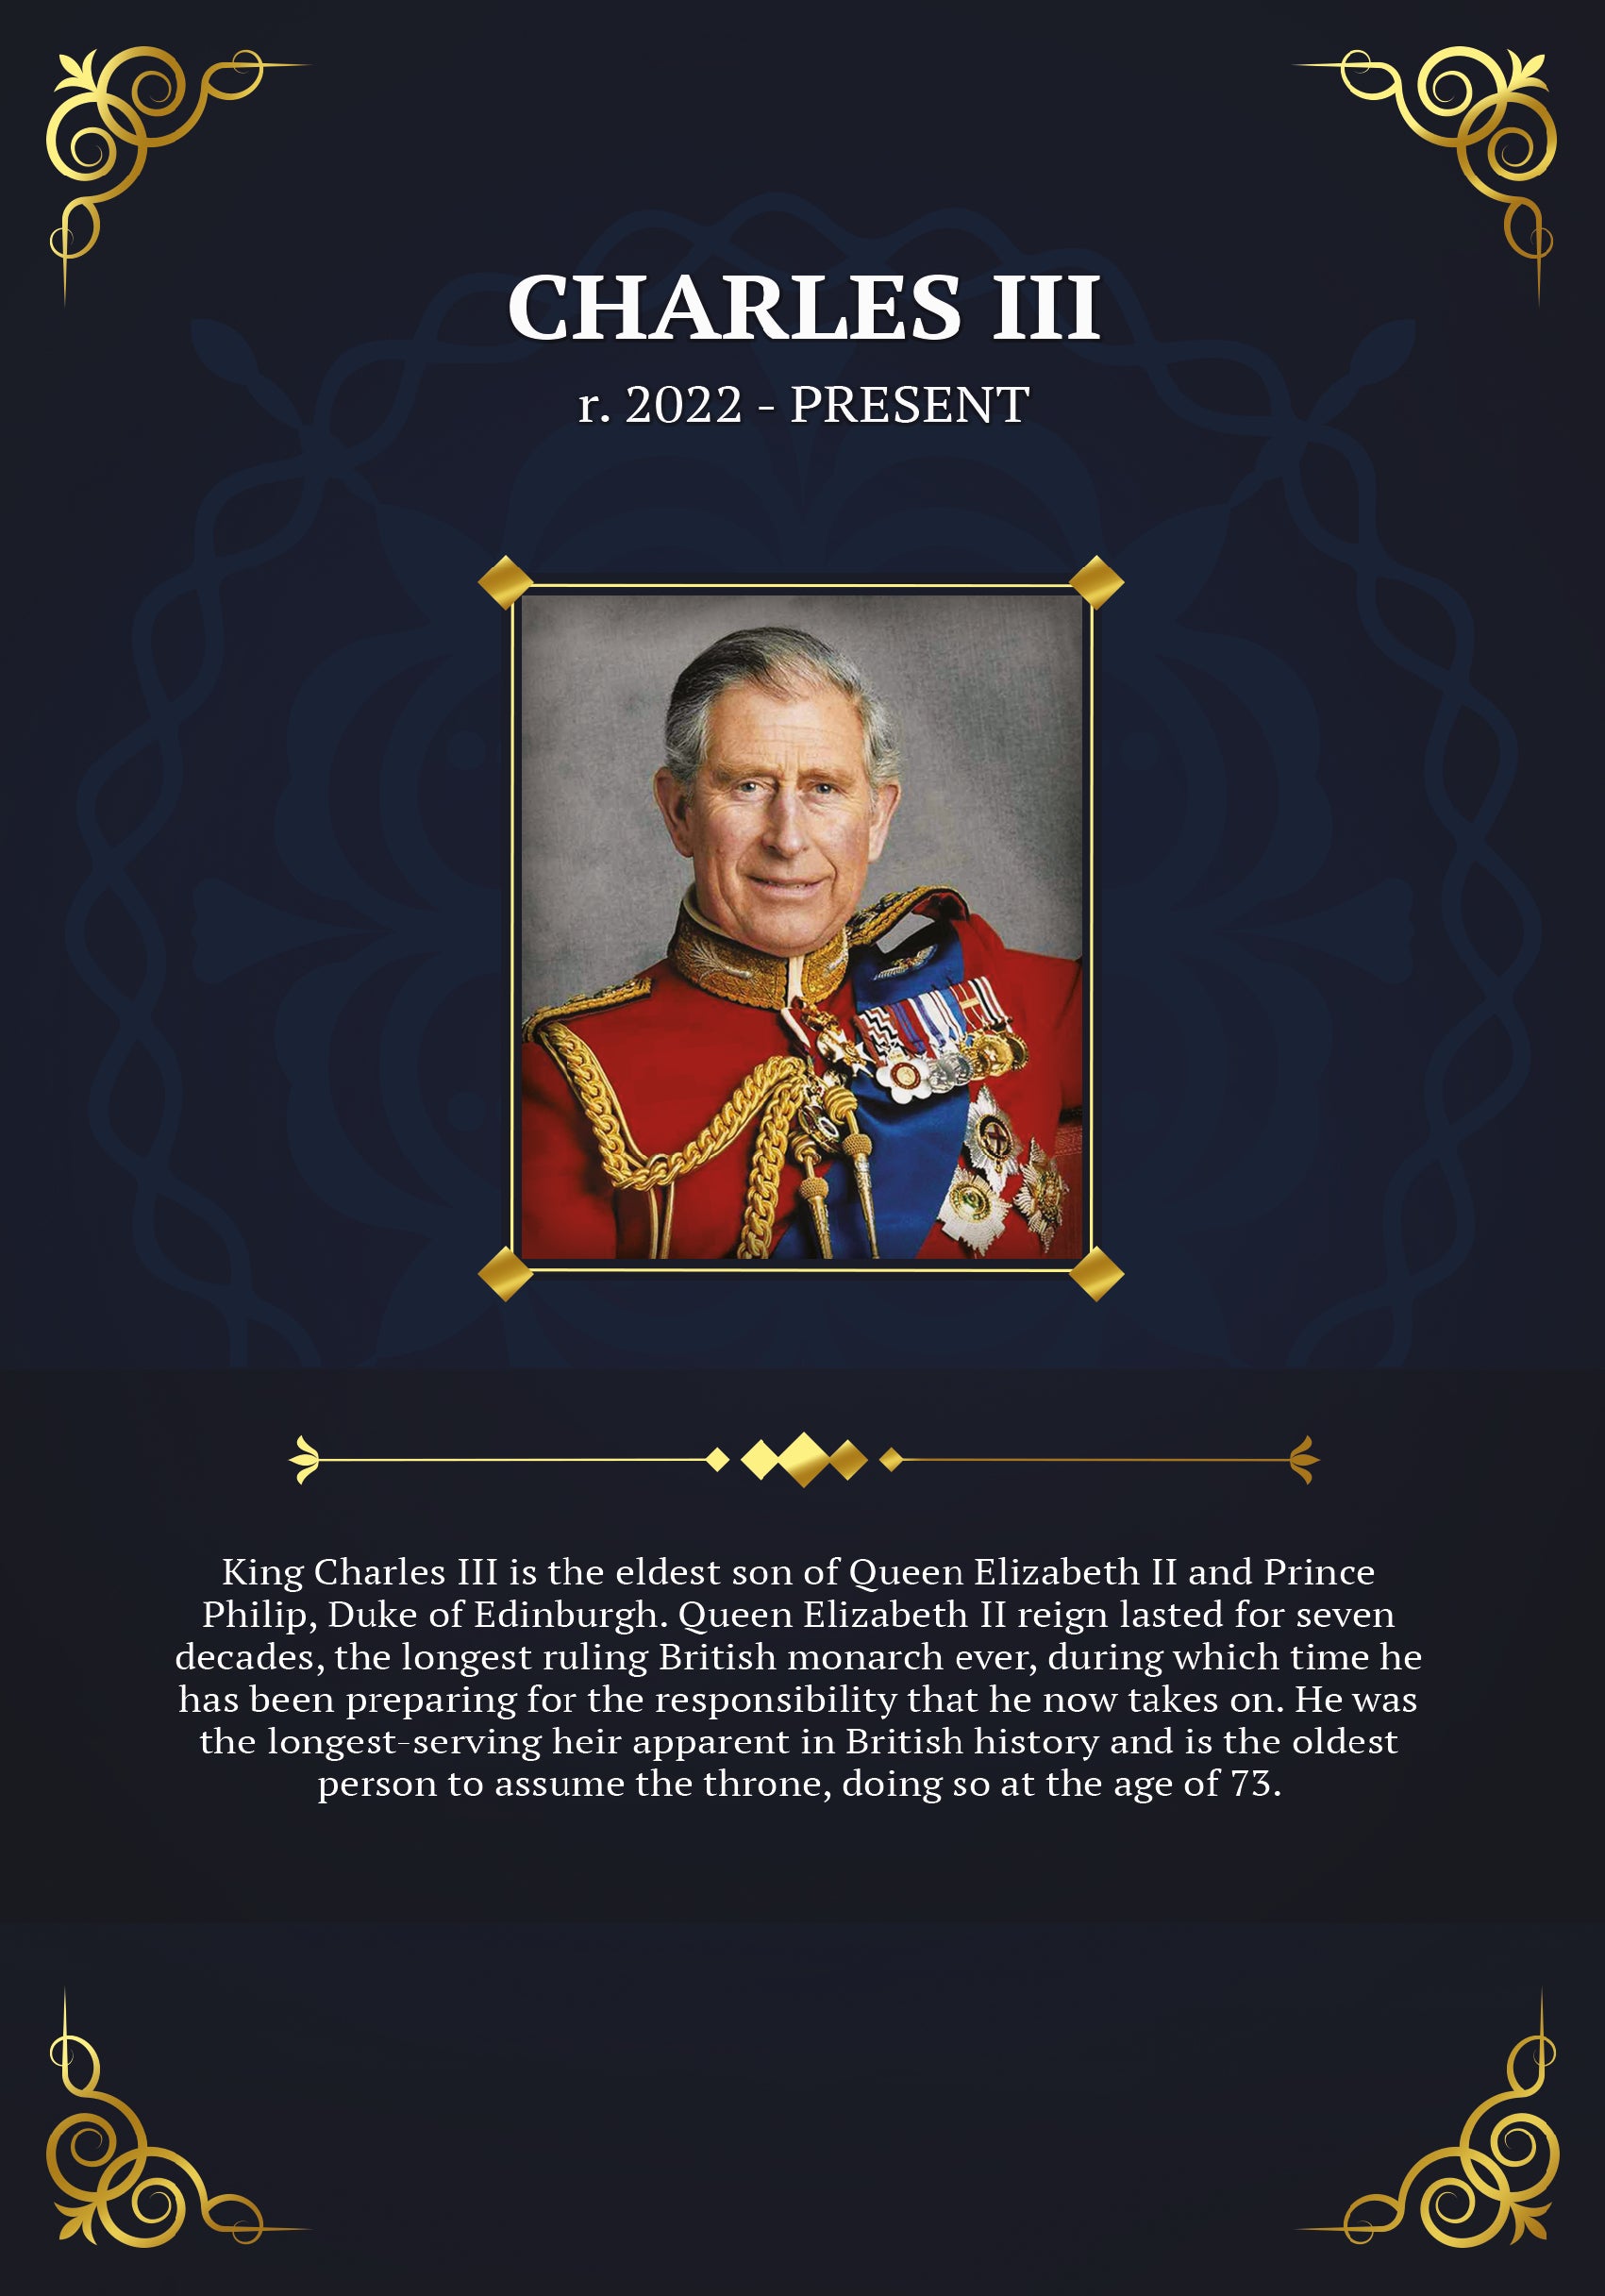 特徴的な王の歴史 - チャールズ 3 世の純銀の棒